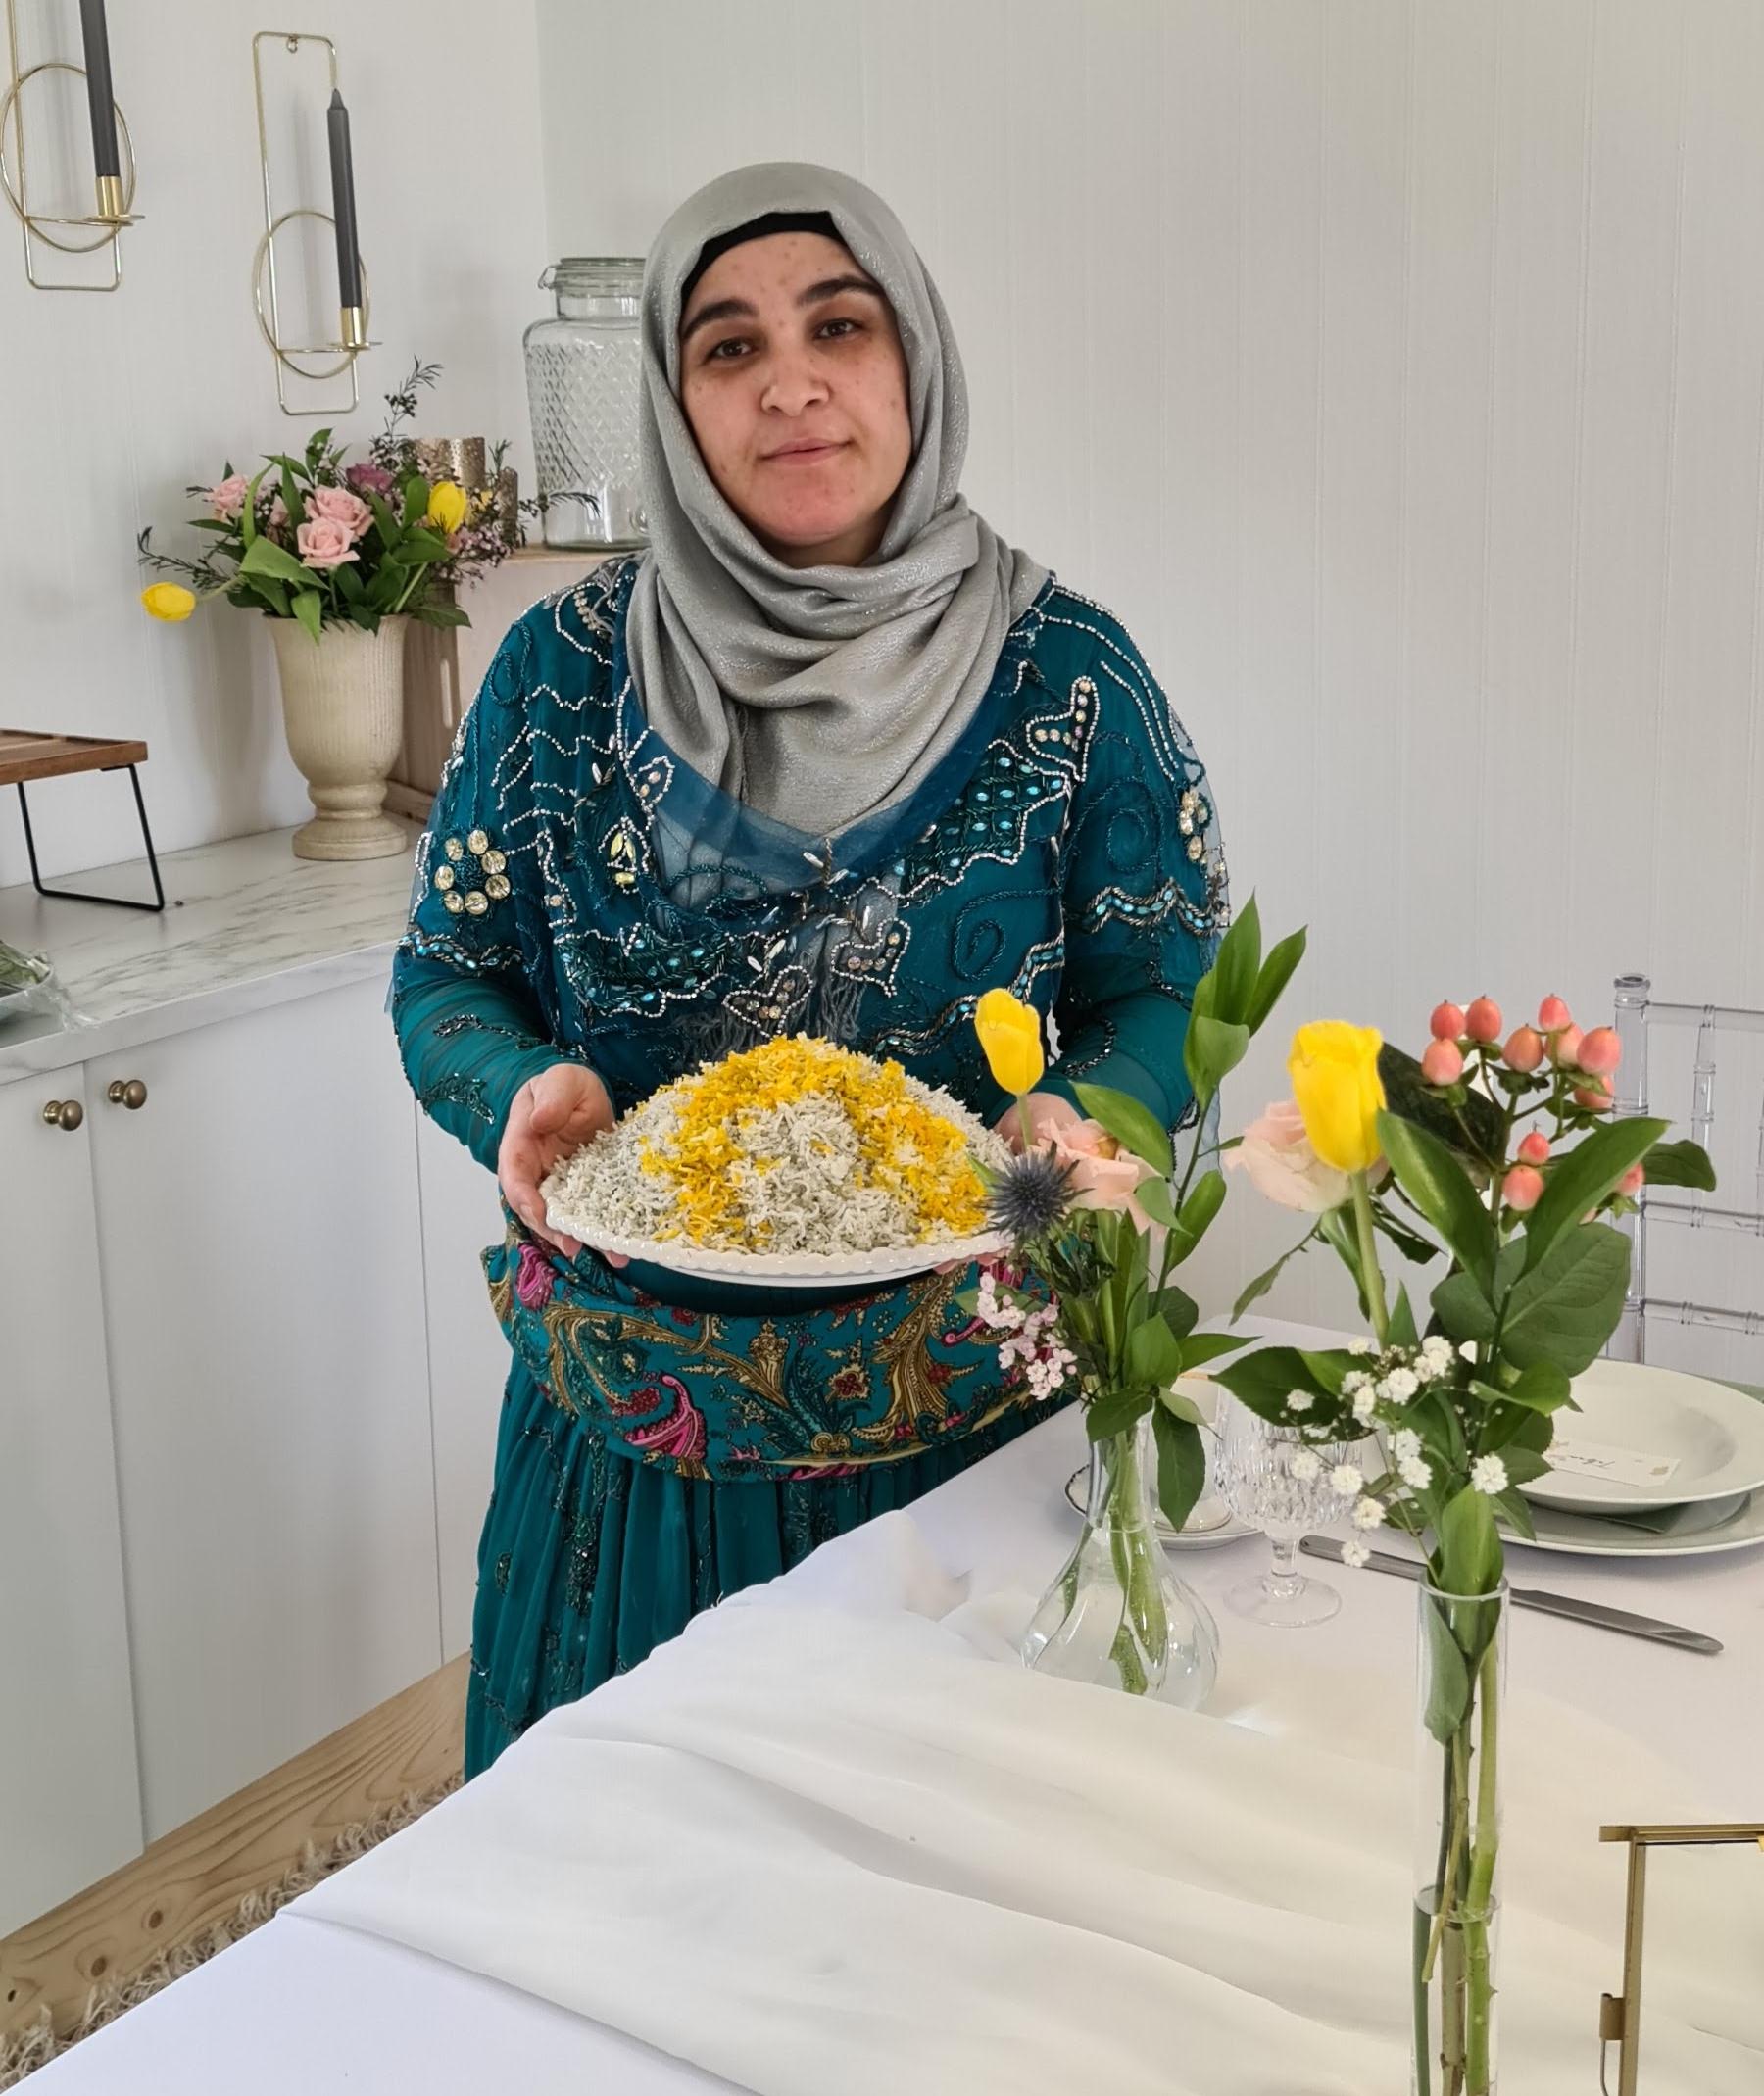 TRADISJON: Id-feiringen er en viktig tid for mange, og særlig maten spiller en sentral rolle i den islamske høytiden. 